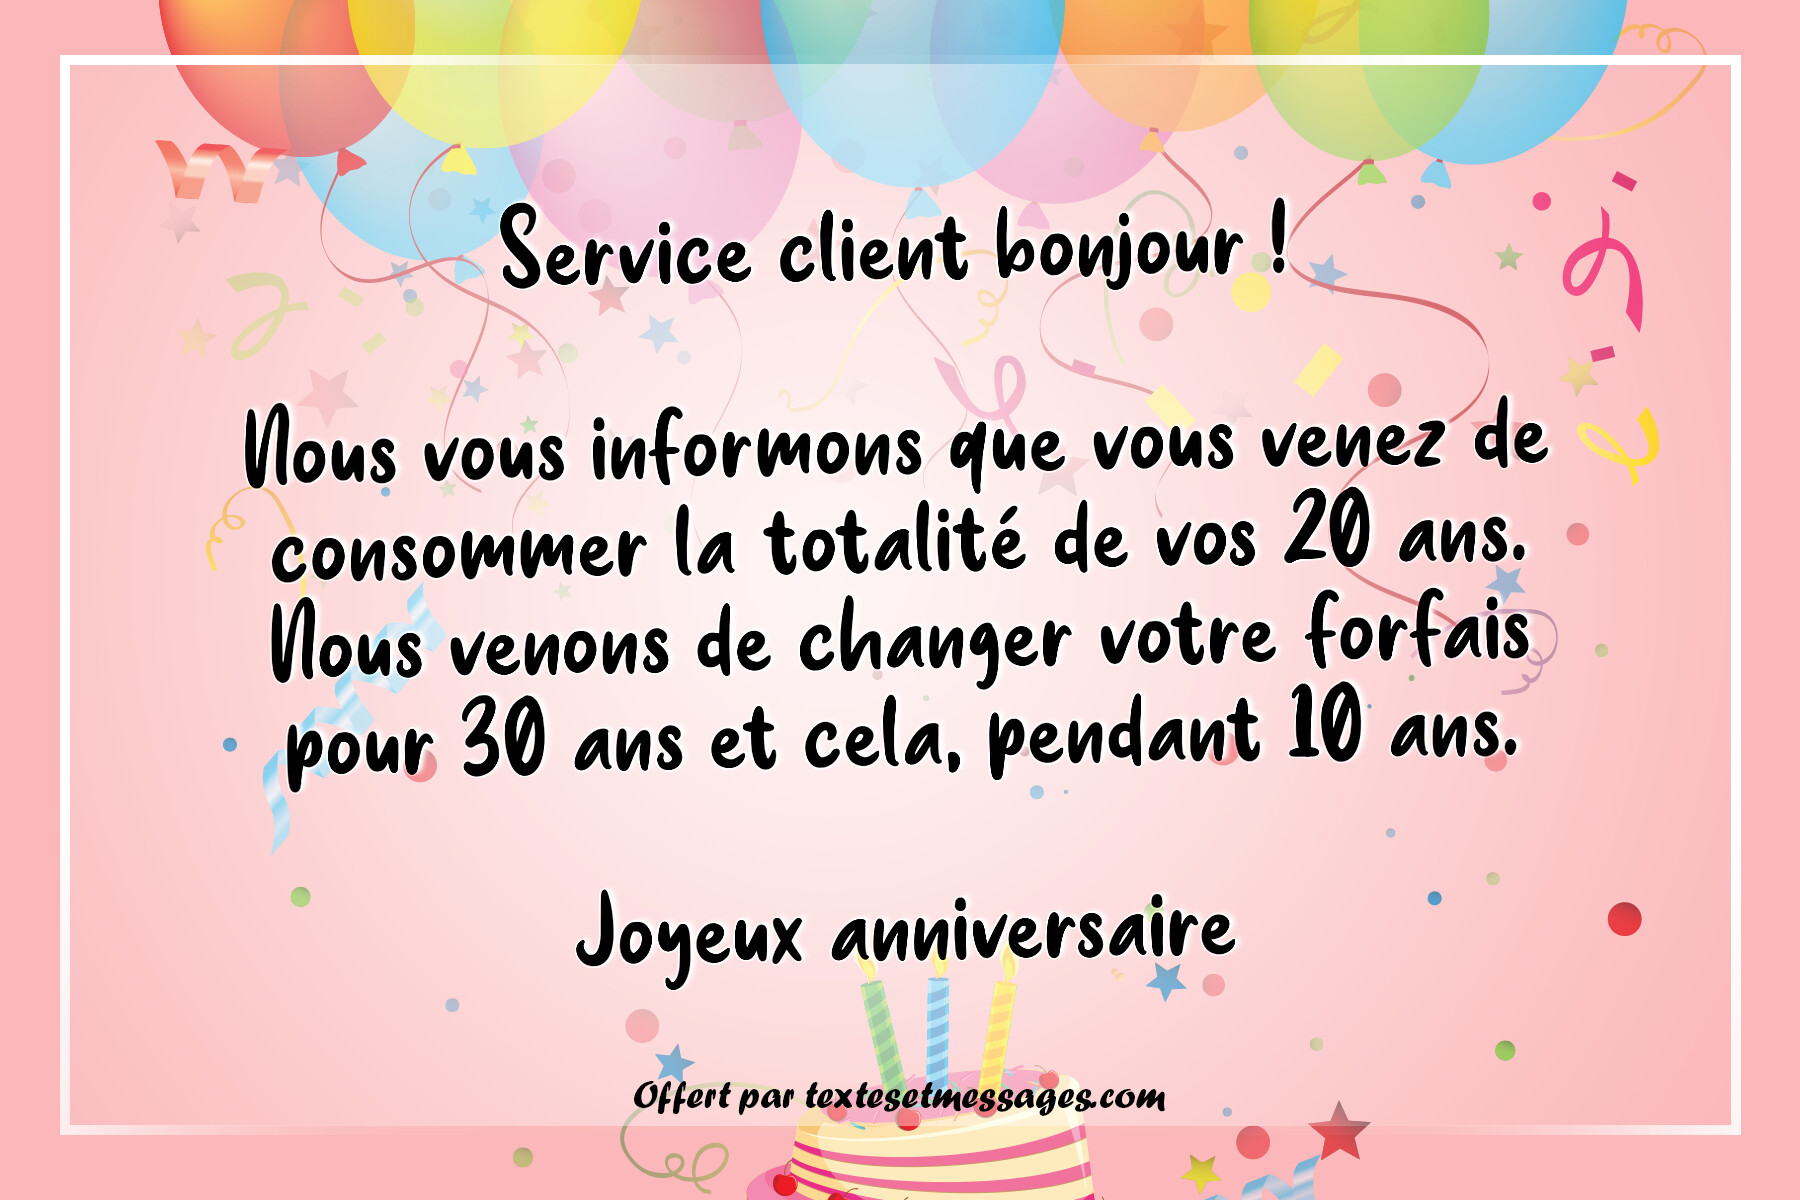 Service client bonjour : 30 ans